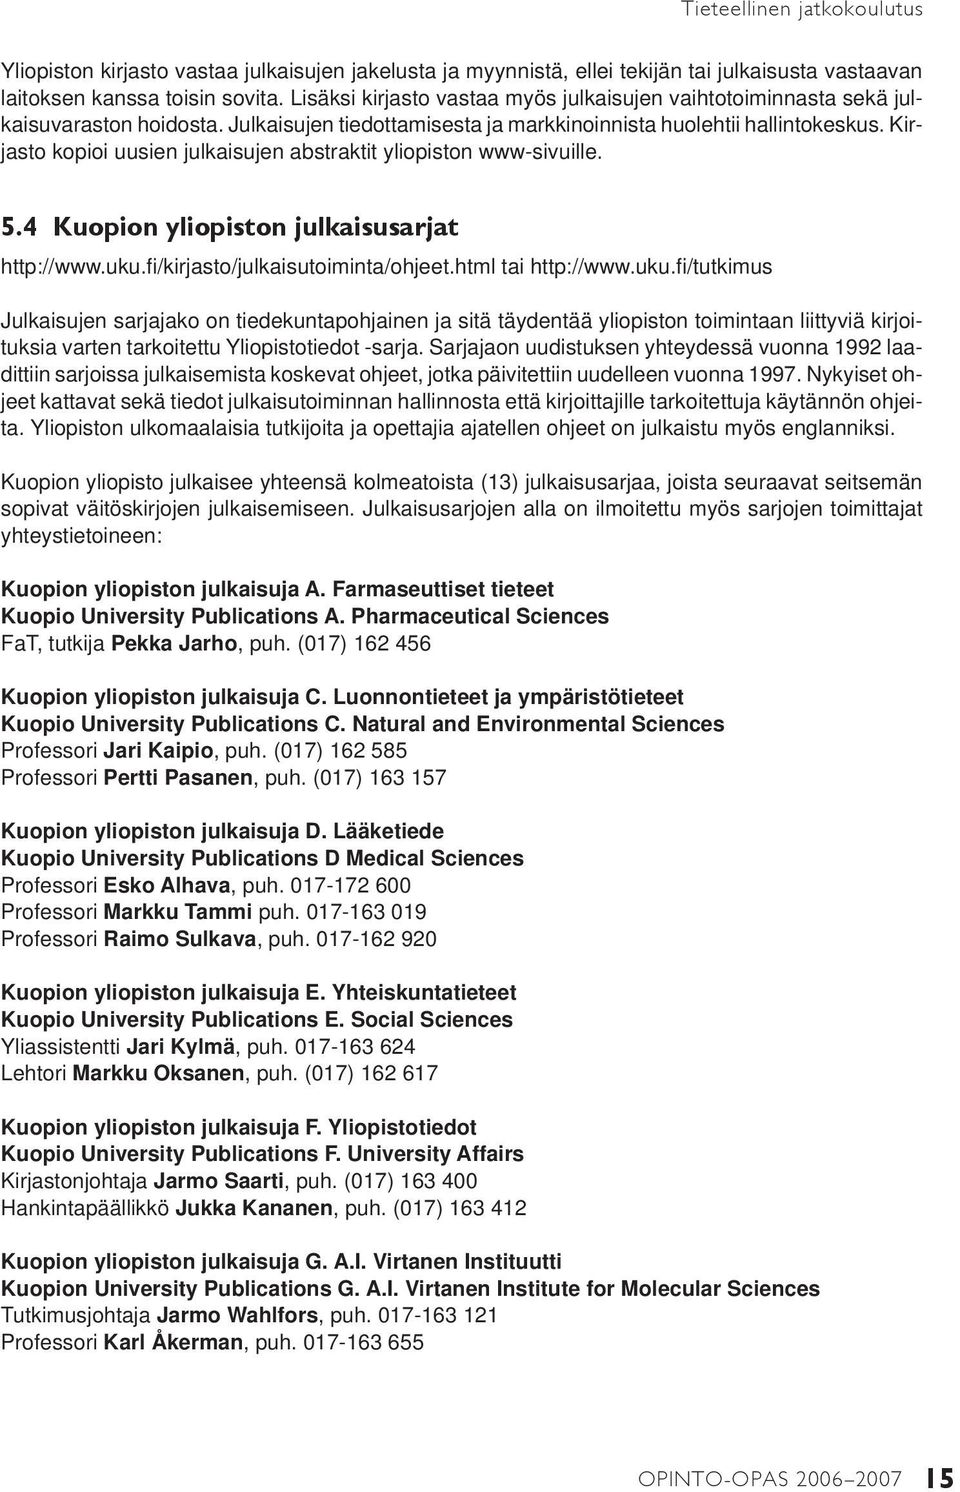 Kirjasto kopioi uusien julkaisujen abstraktit yliopiston www-sivuille. 5.4 Kuopion yliopiston julkaisusarjat http://www.uku.